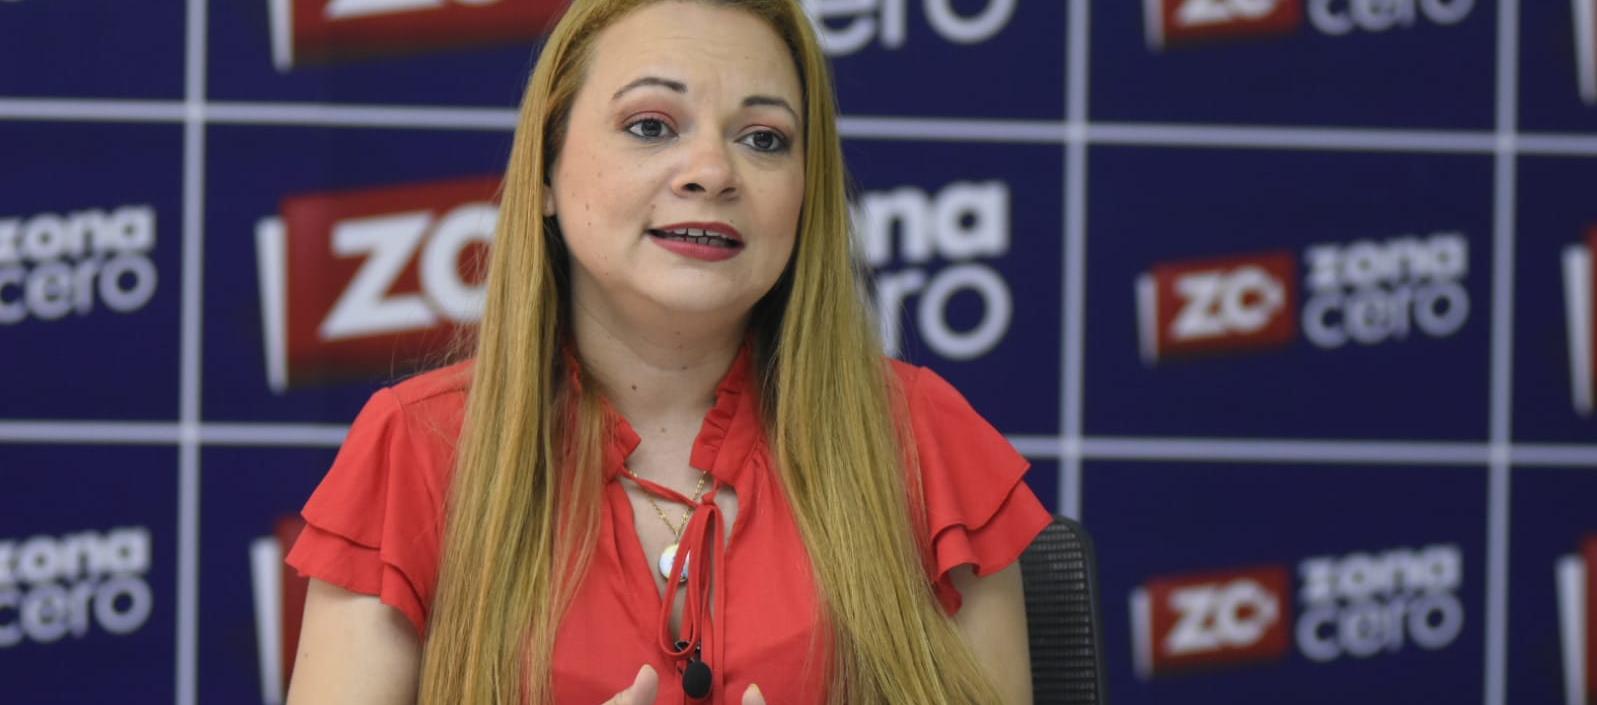 Alejandra Moreno Astwood, candidata a la Asamblea del Atlántico por el Pacto Histórico, en la visita a Zona Cero